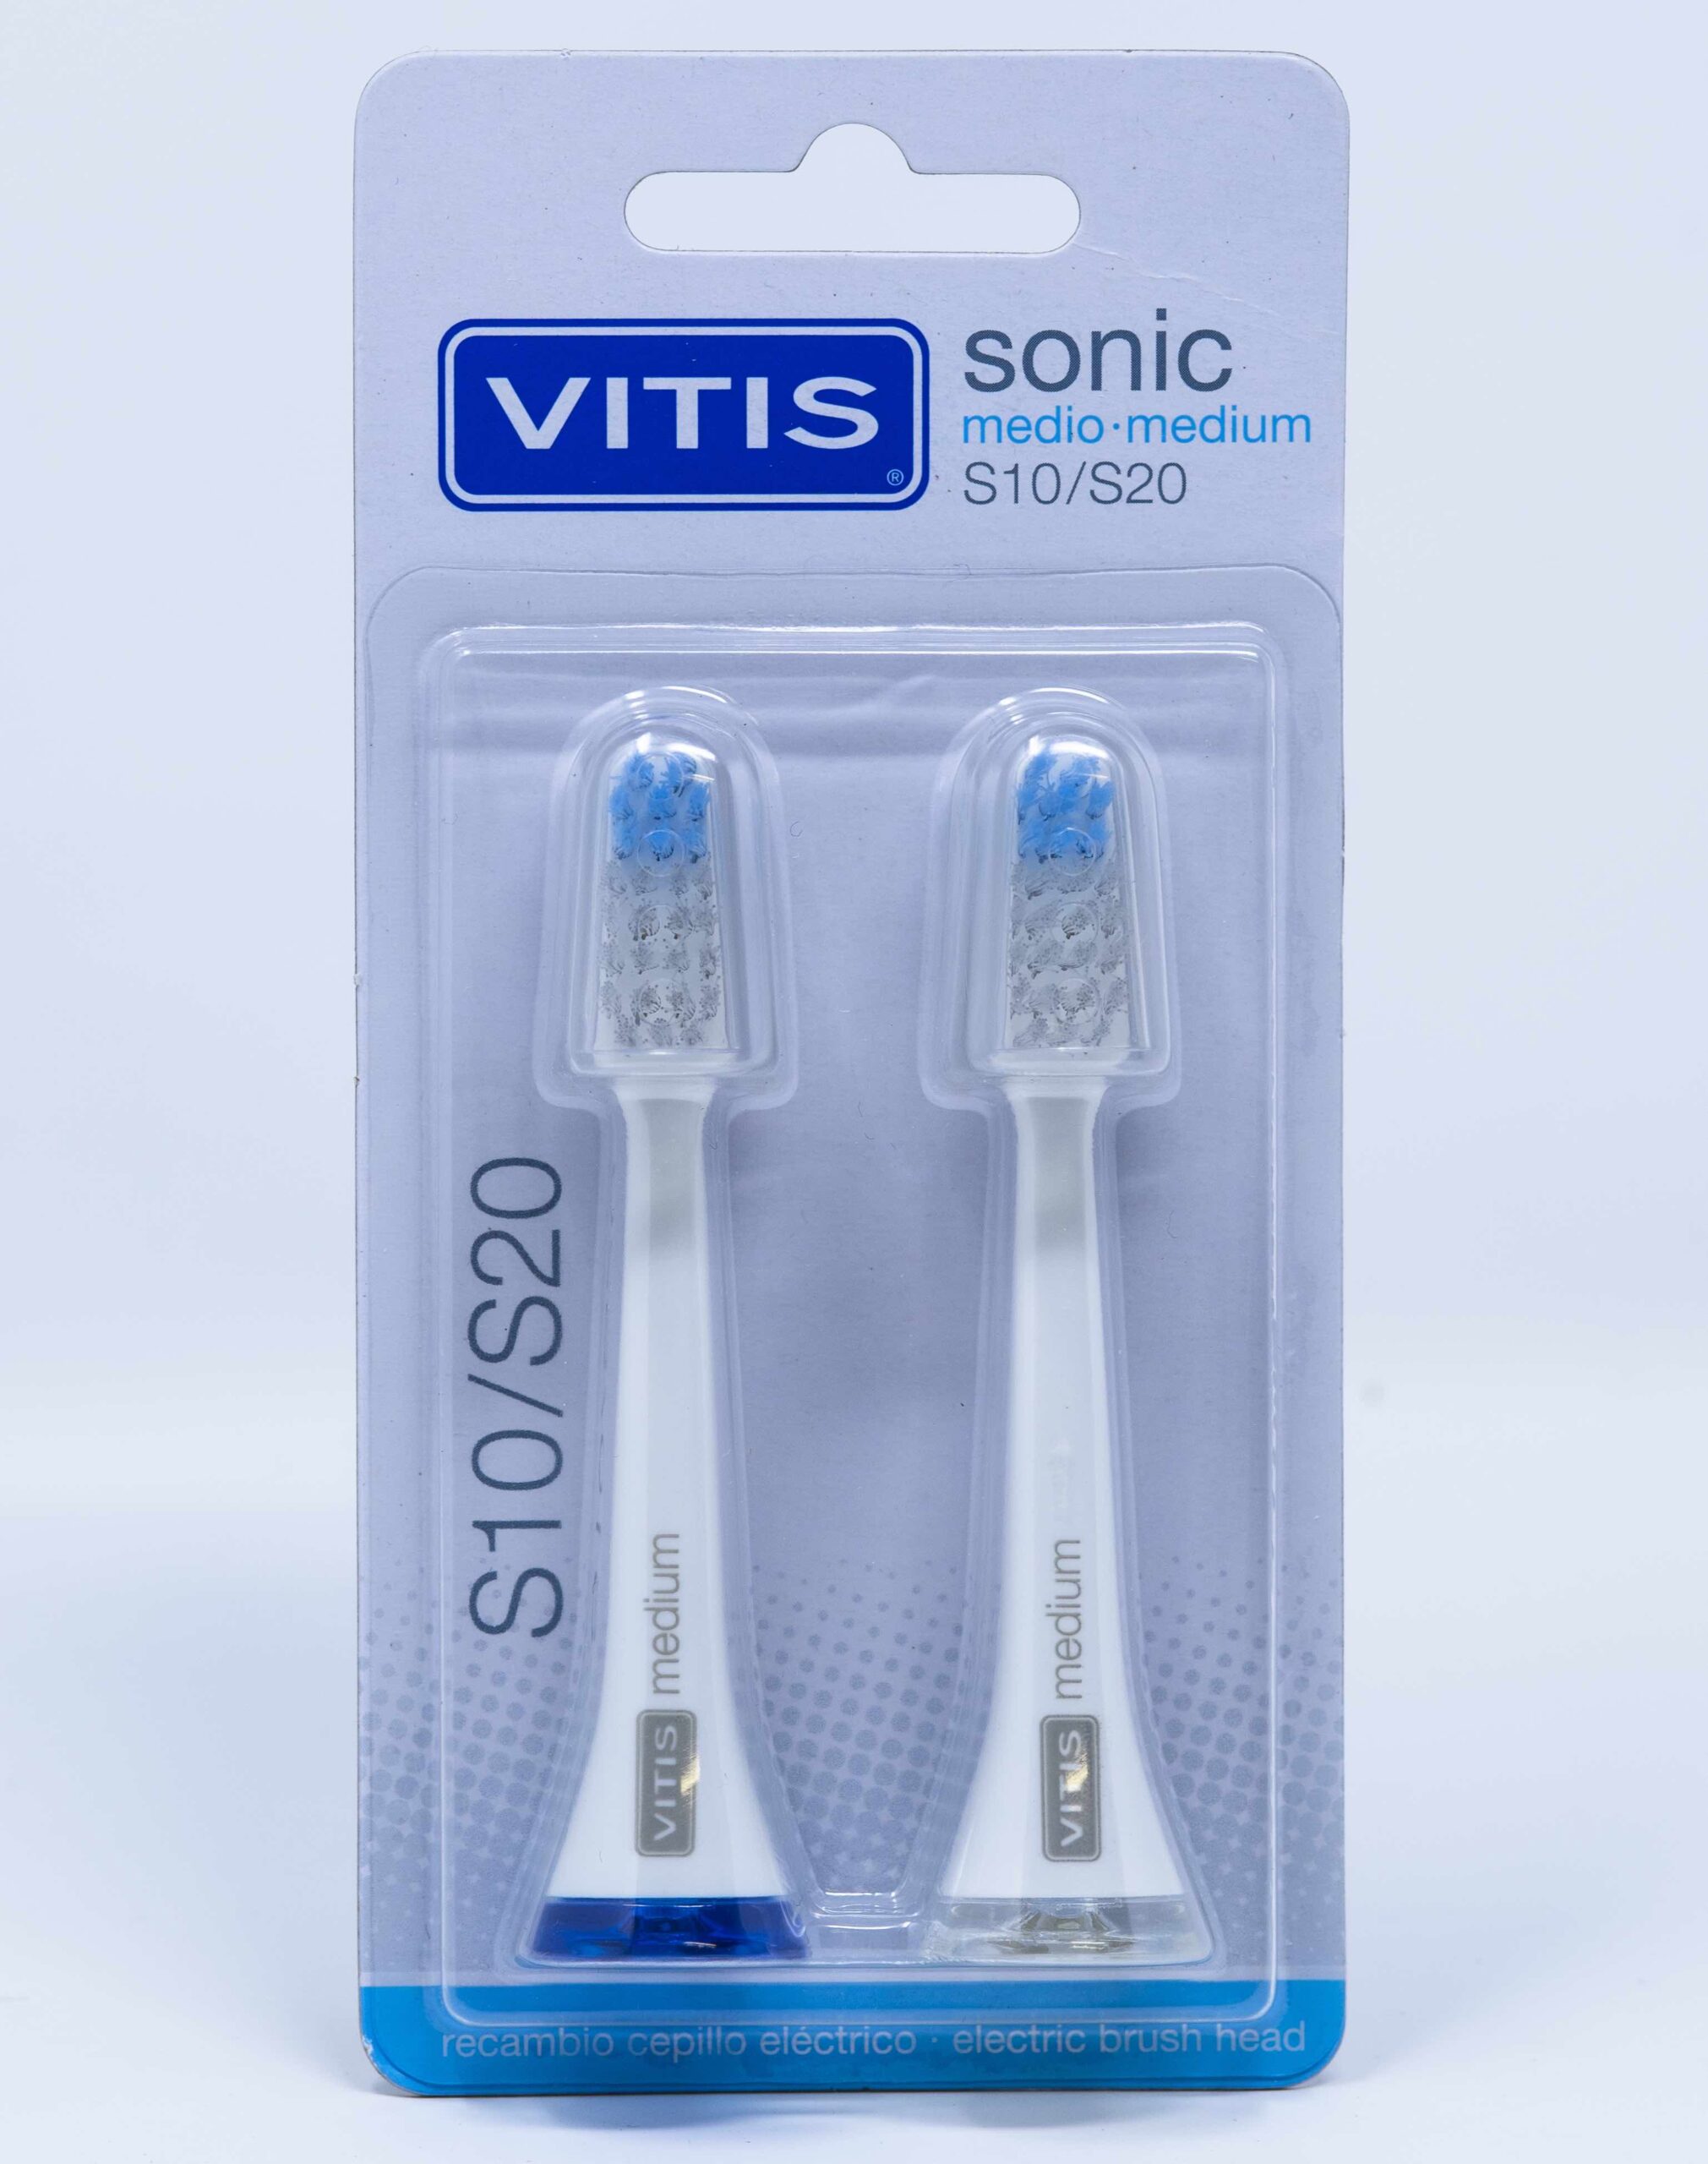 Dentaid Testine di Ricambio Medium Vitis Sonic S20 – 2 pz